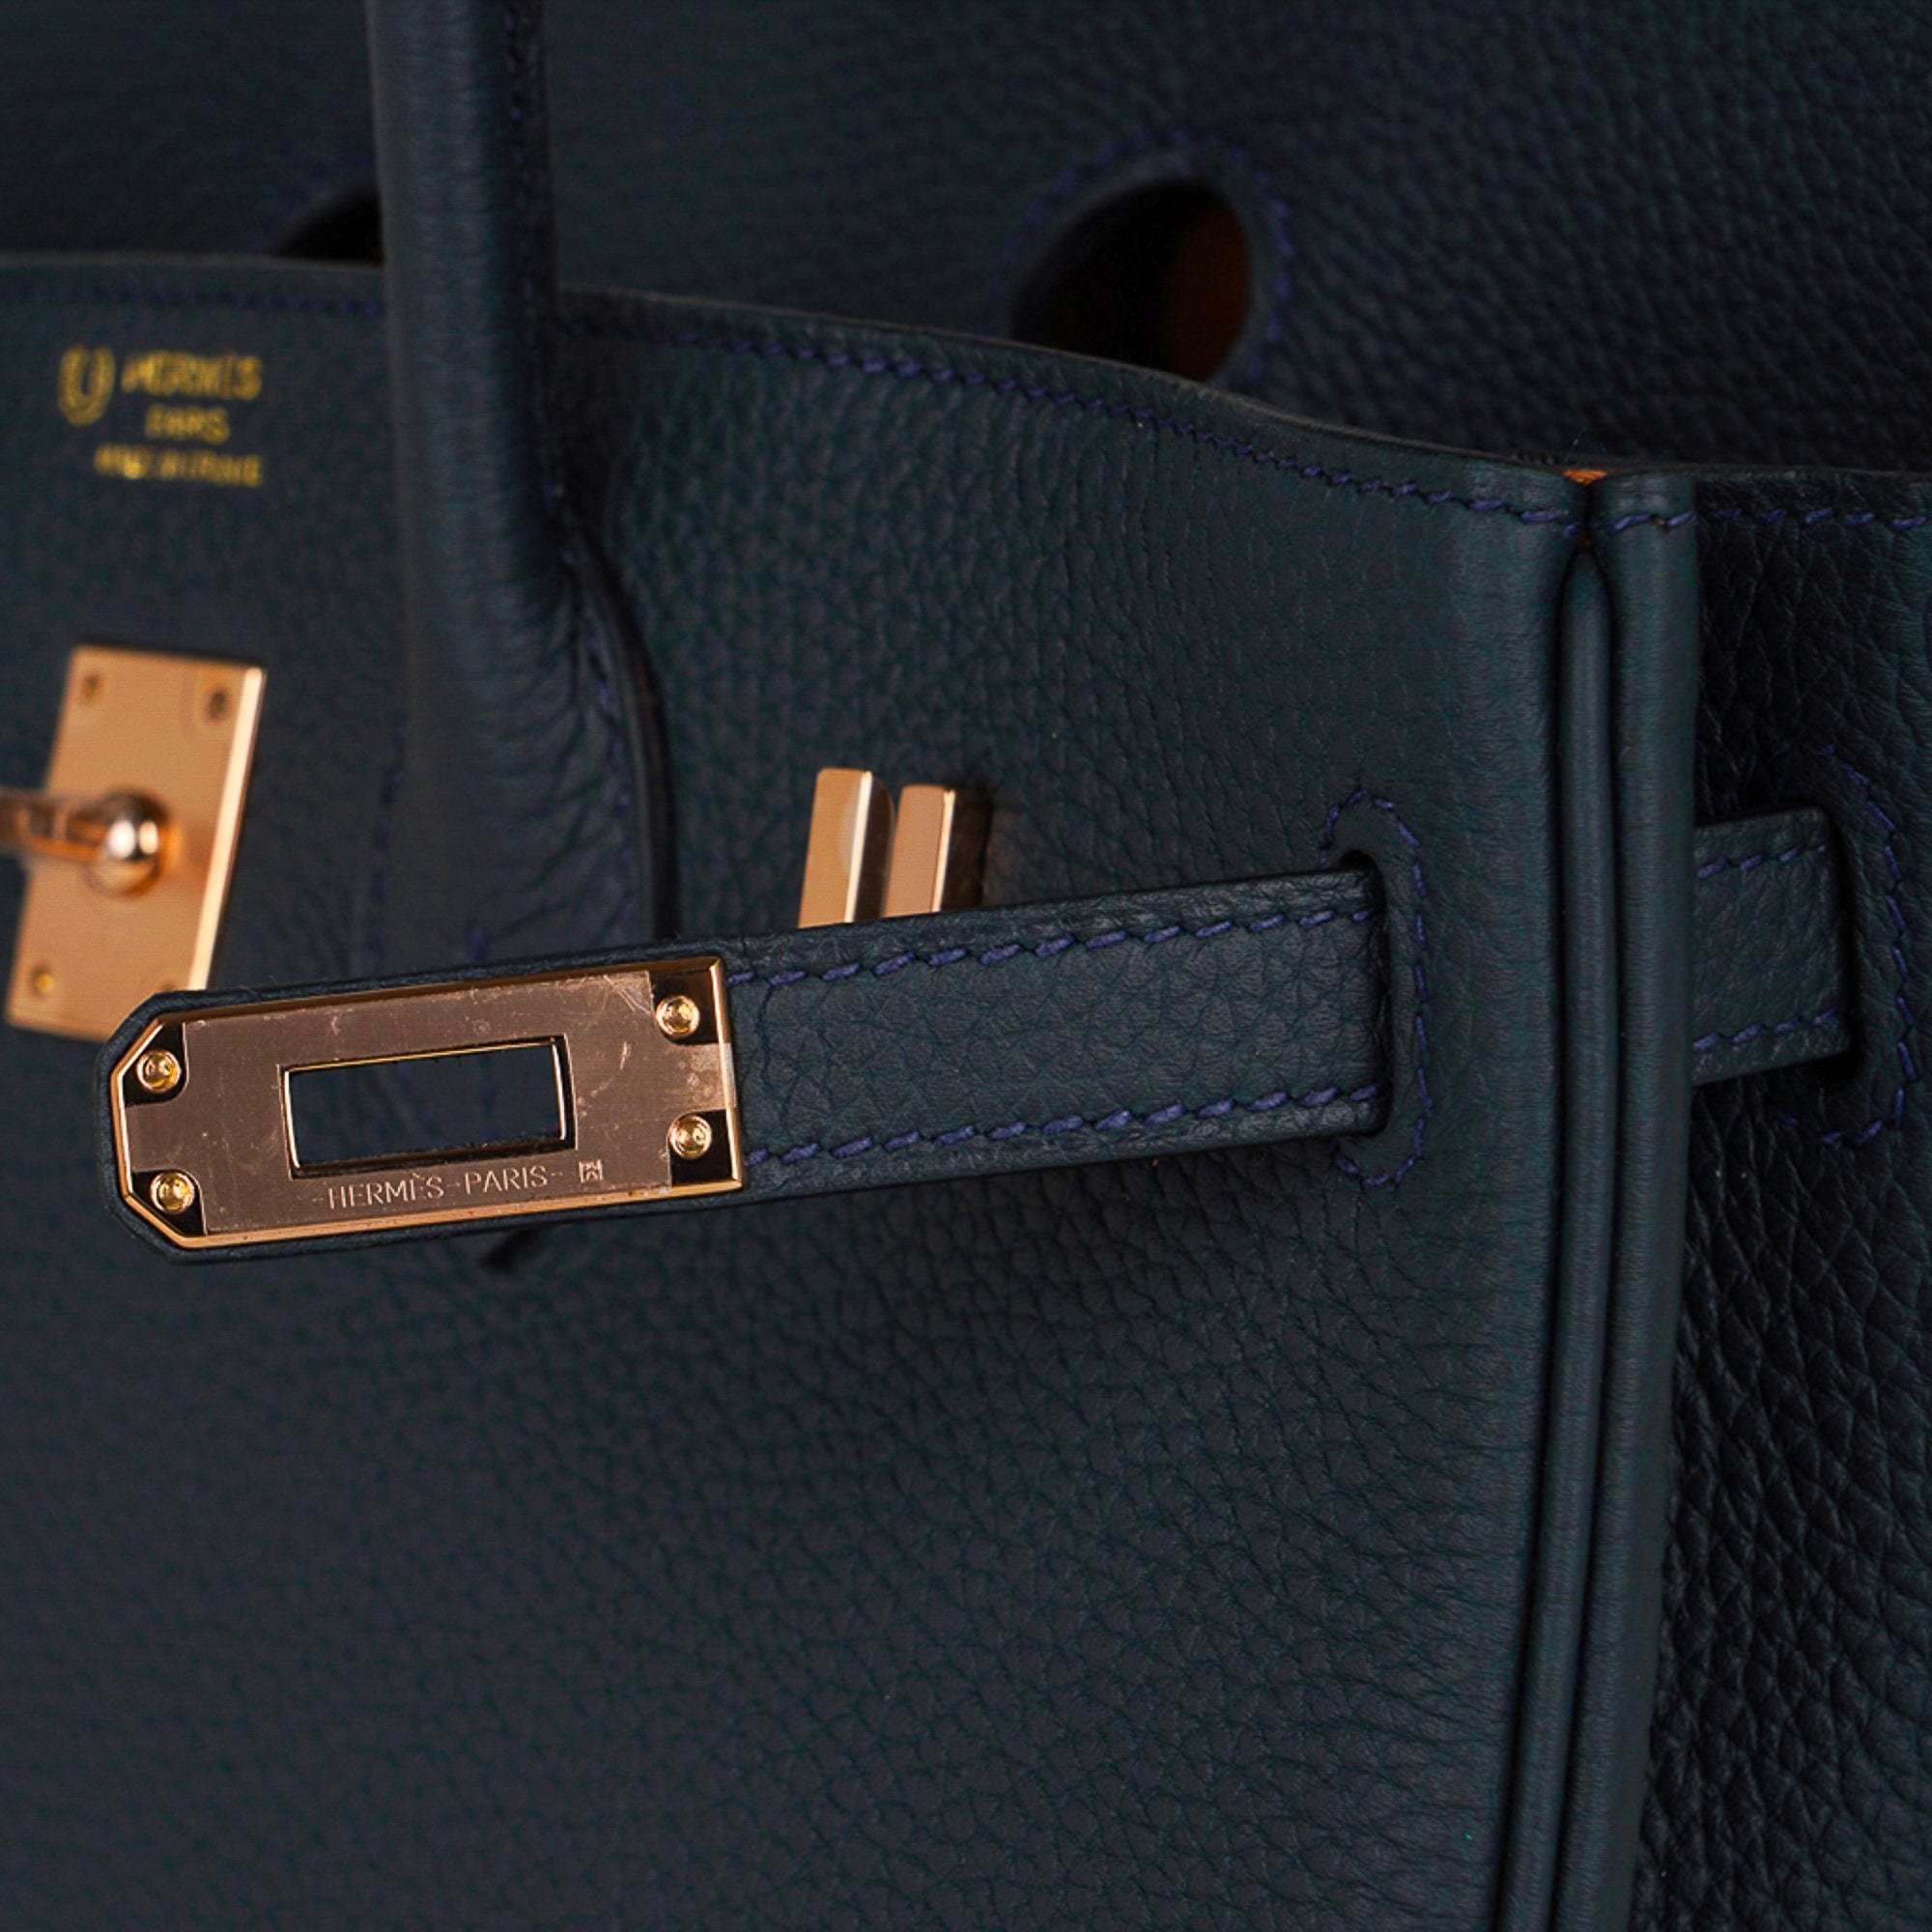 Hermes Birkin bag 25 Blue nuit Togo leather Rose gold hardware